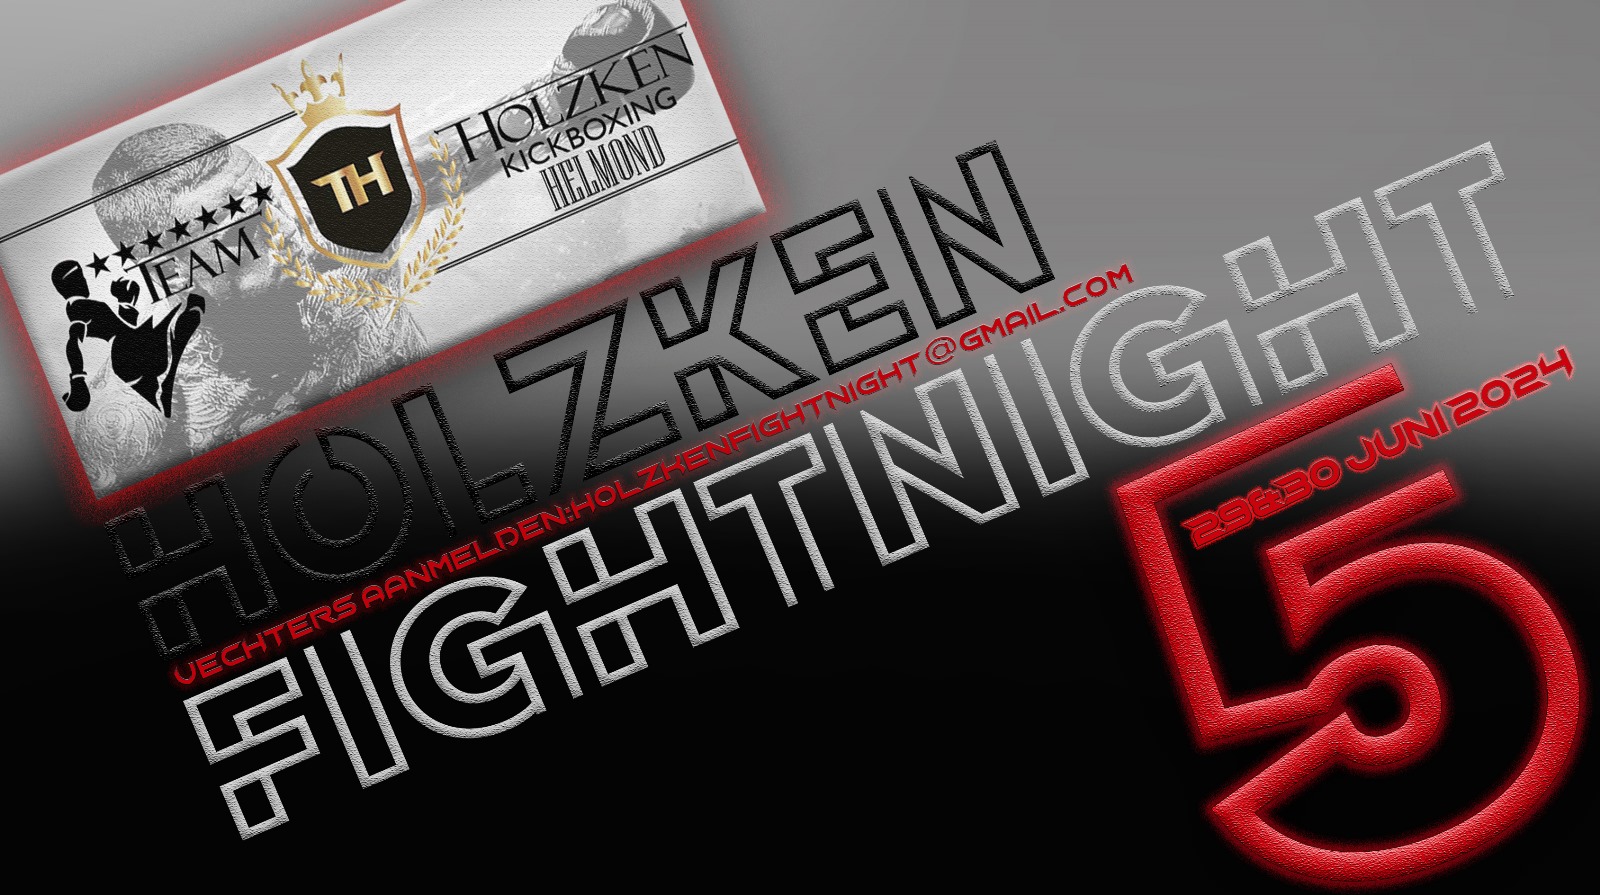 Holzken Fight Night 5 Jeugd Gala